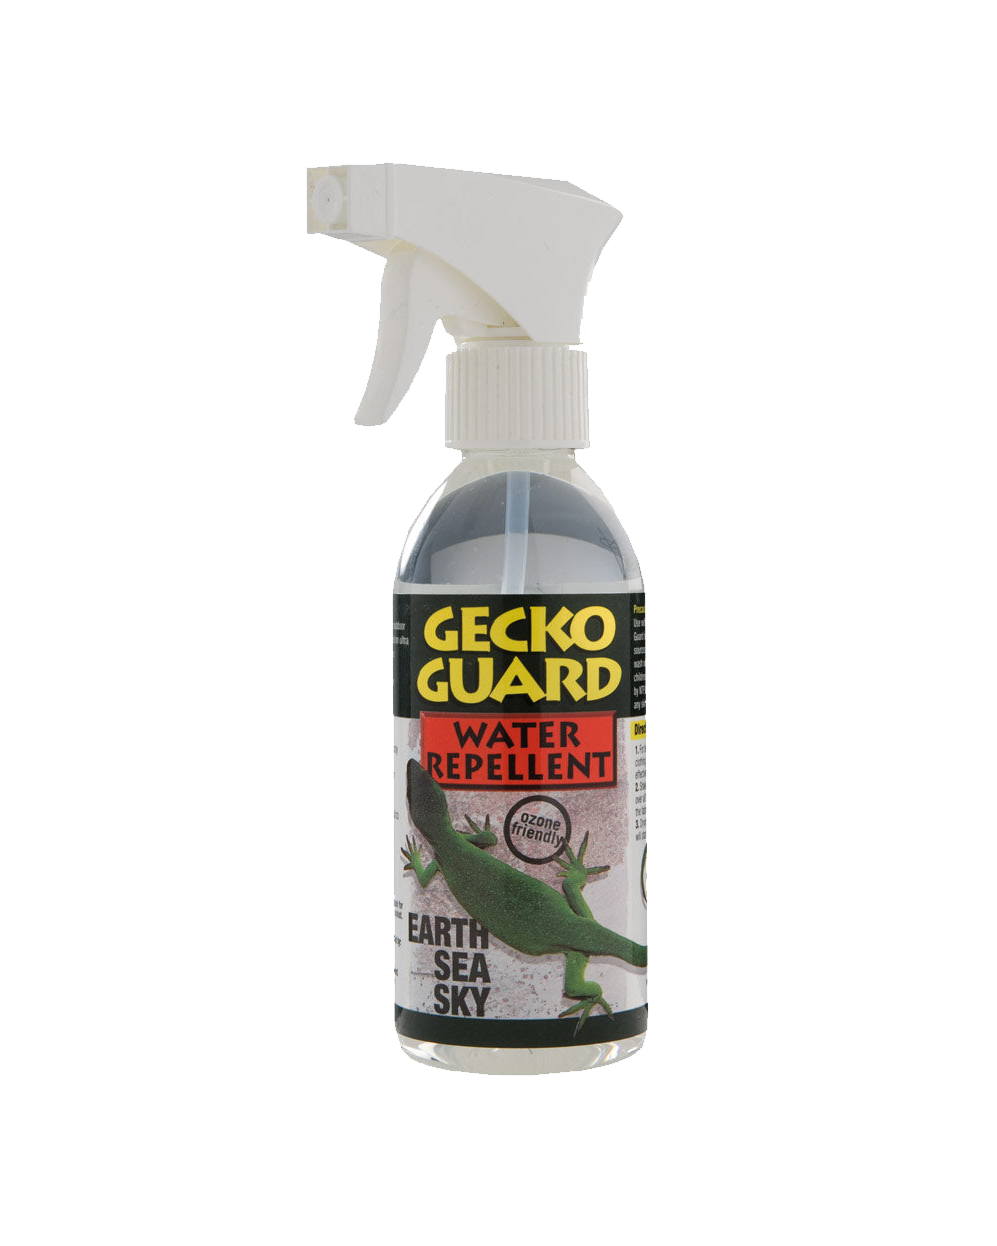 Gecko Guard Waterproof Revival Spray